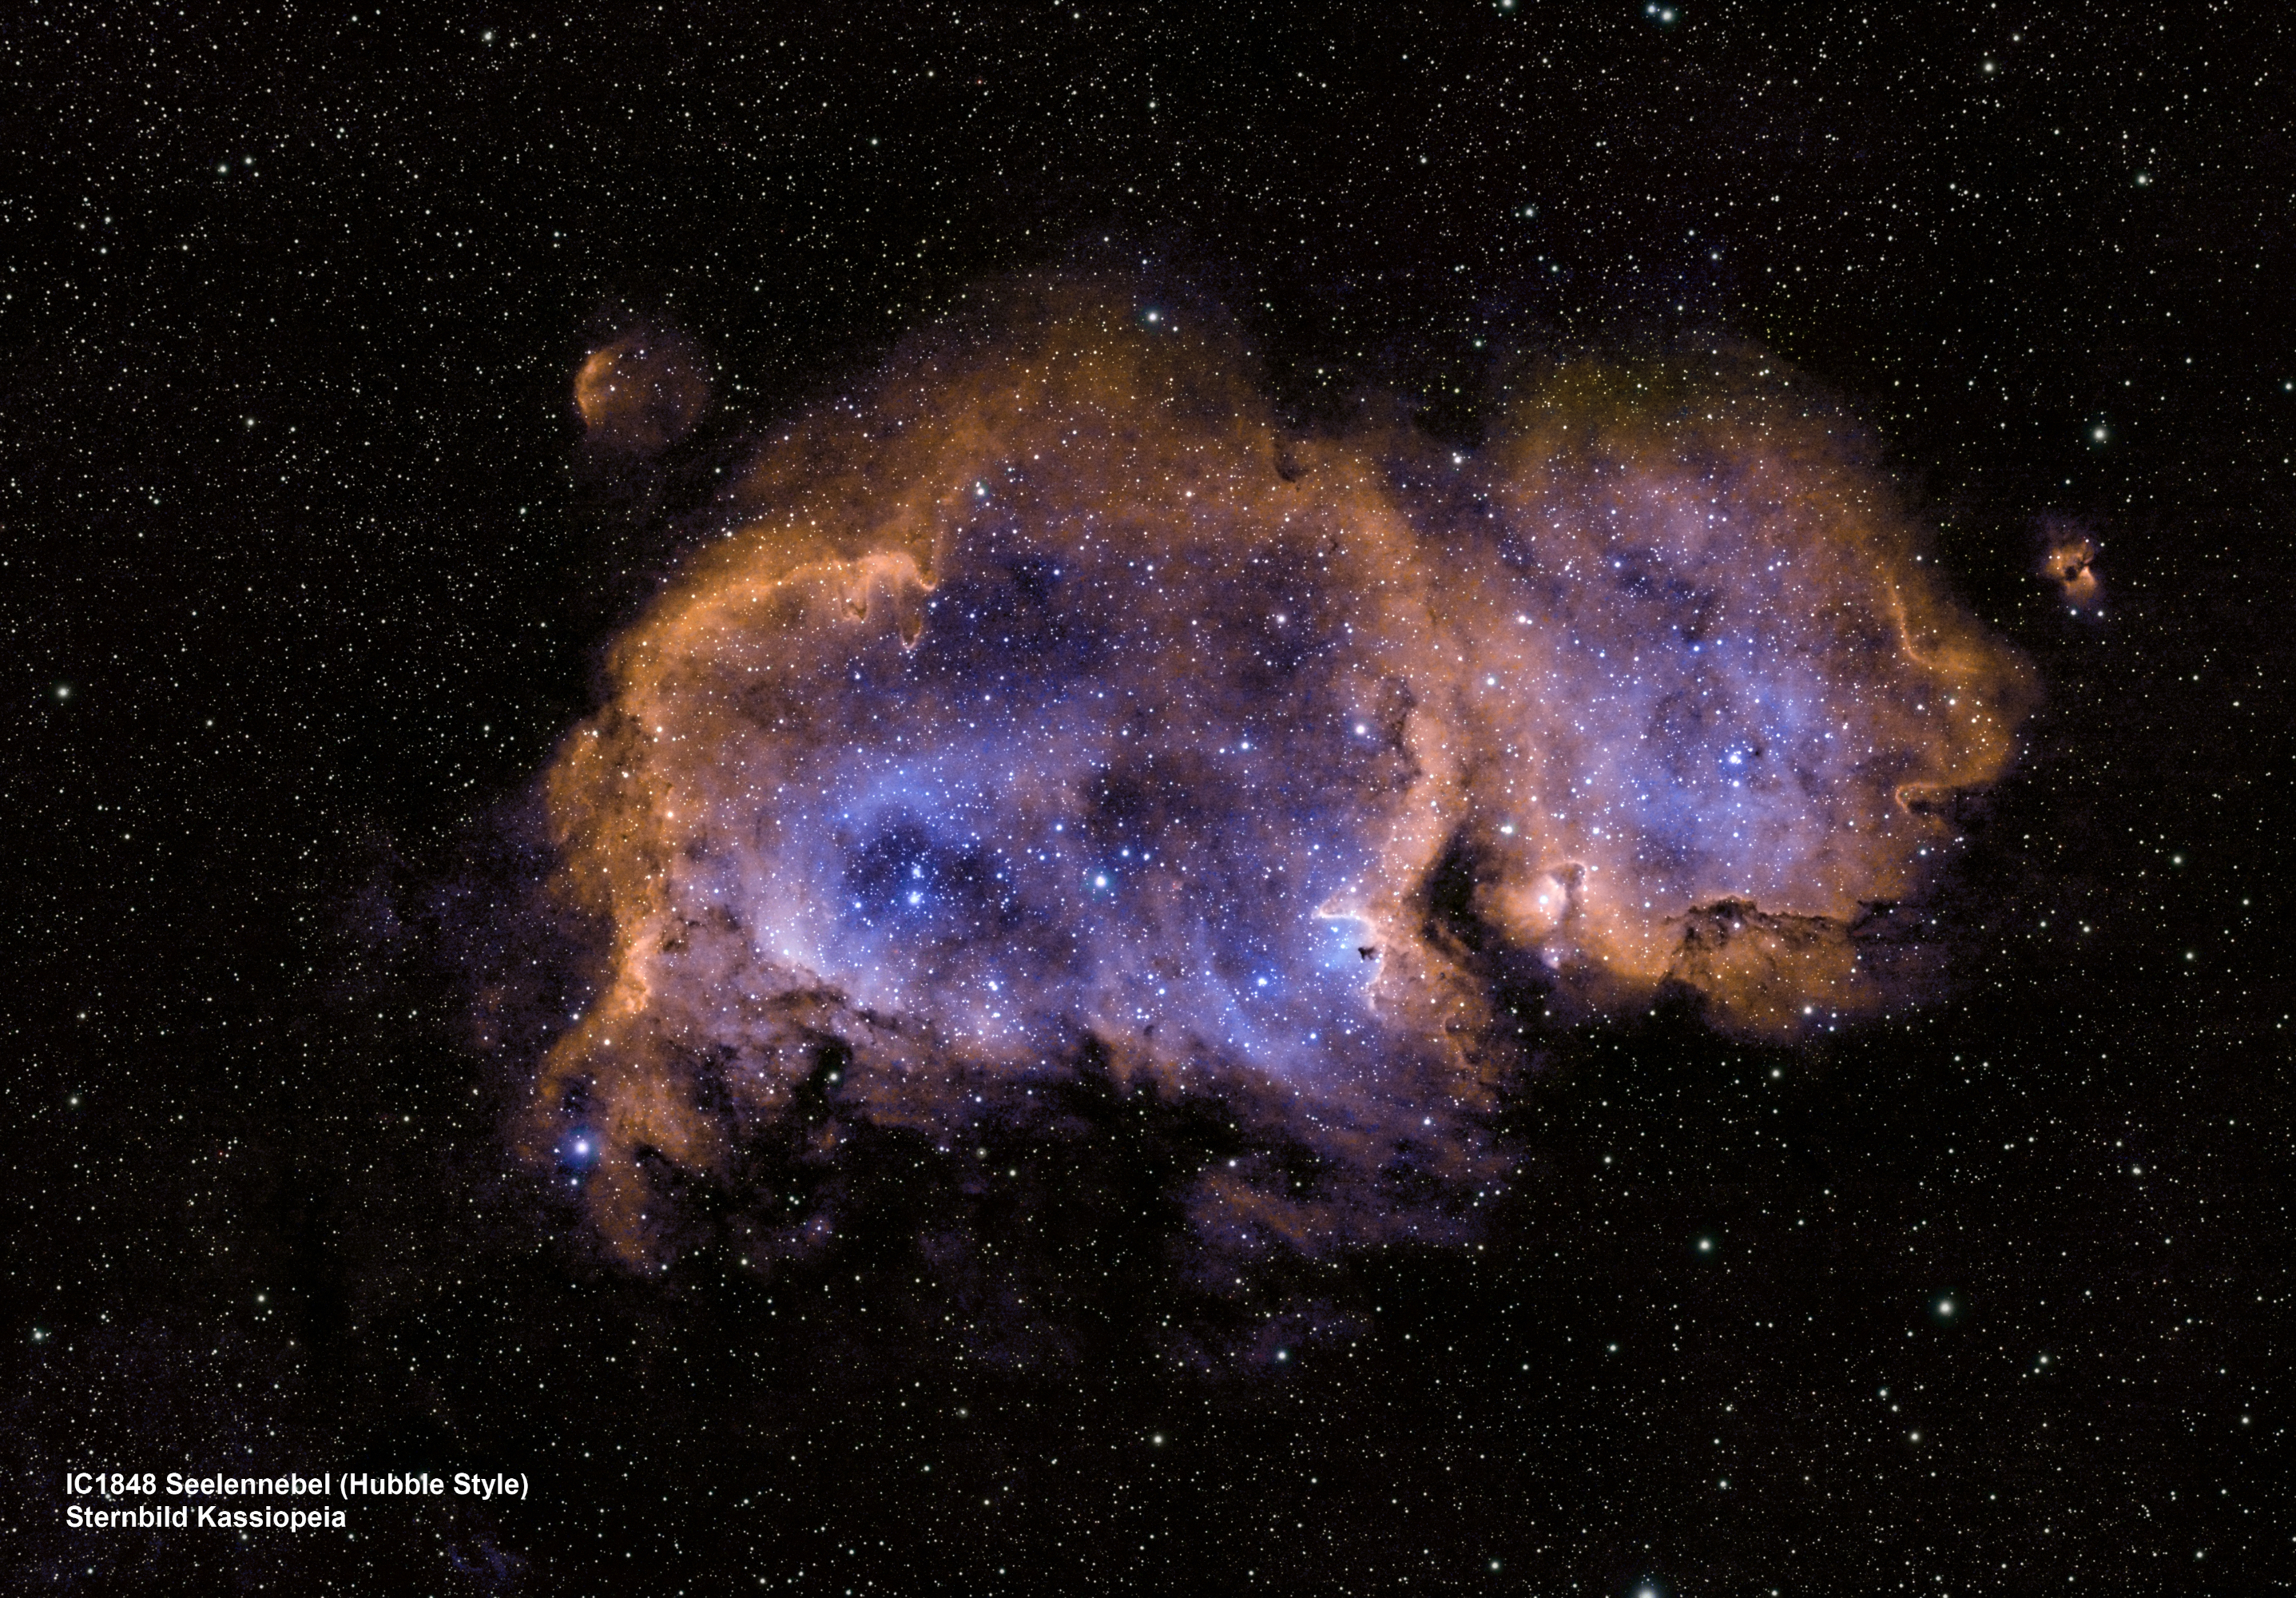 IC1848 Seelennebel / Hubble Style